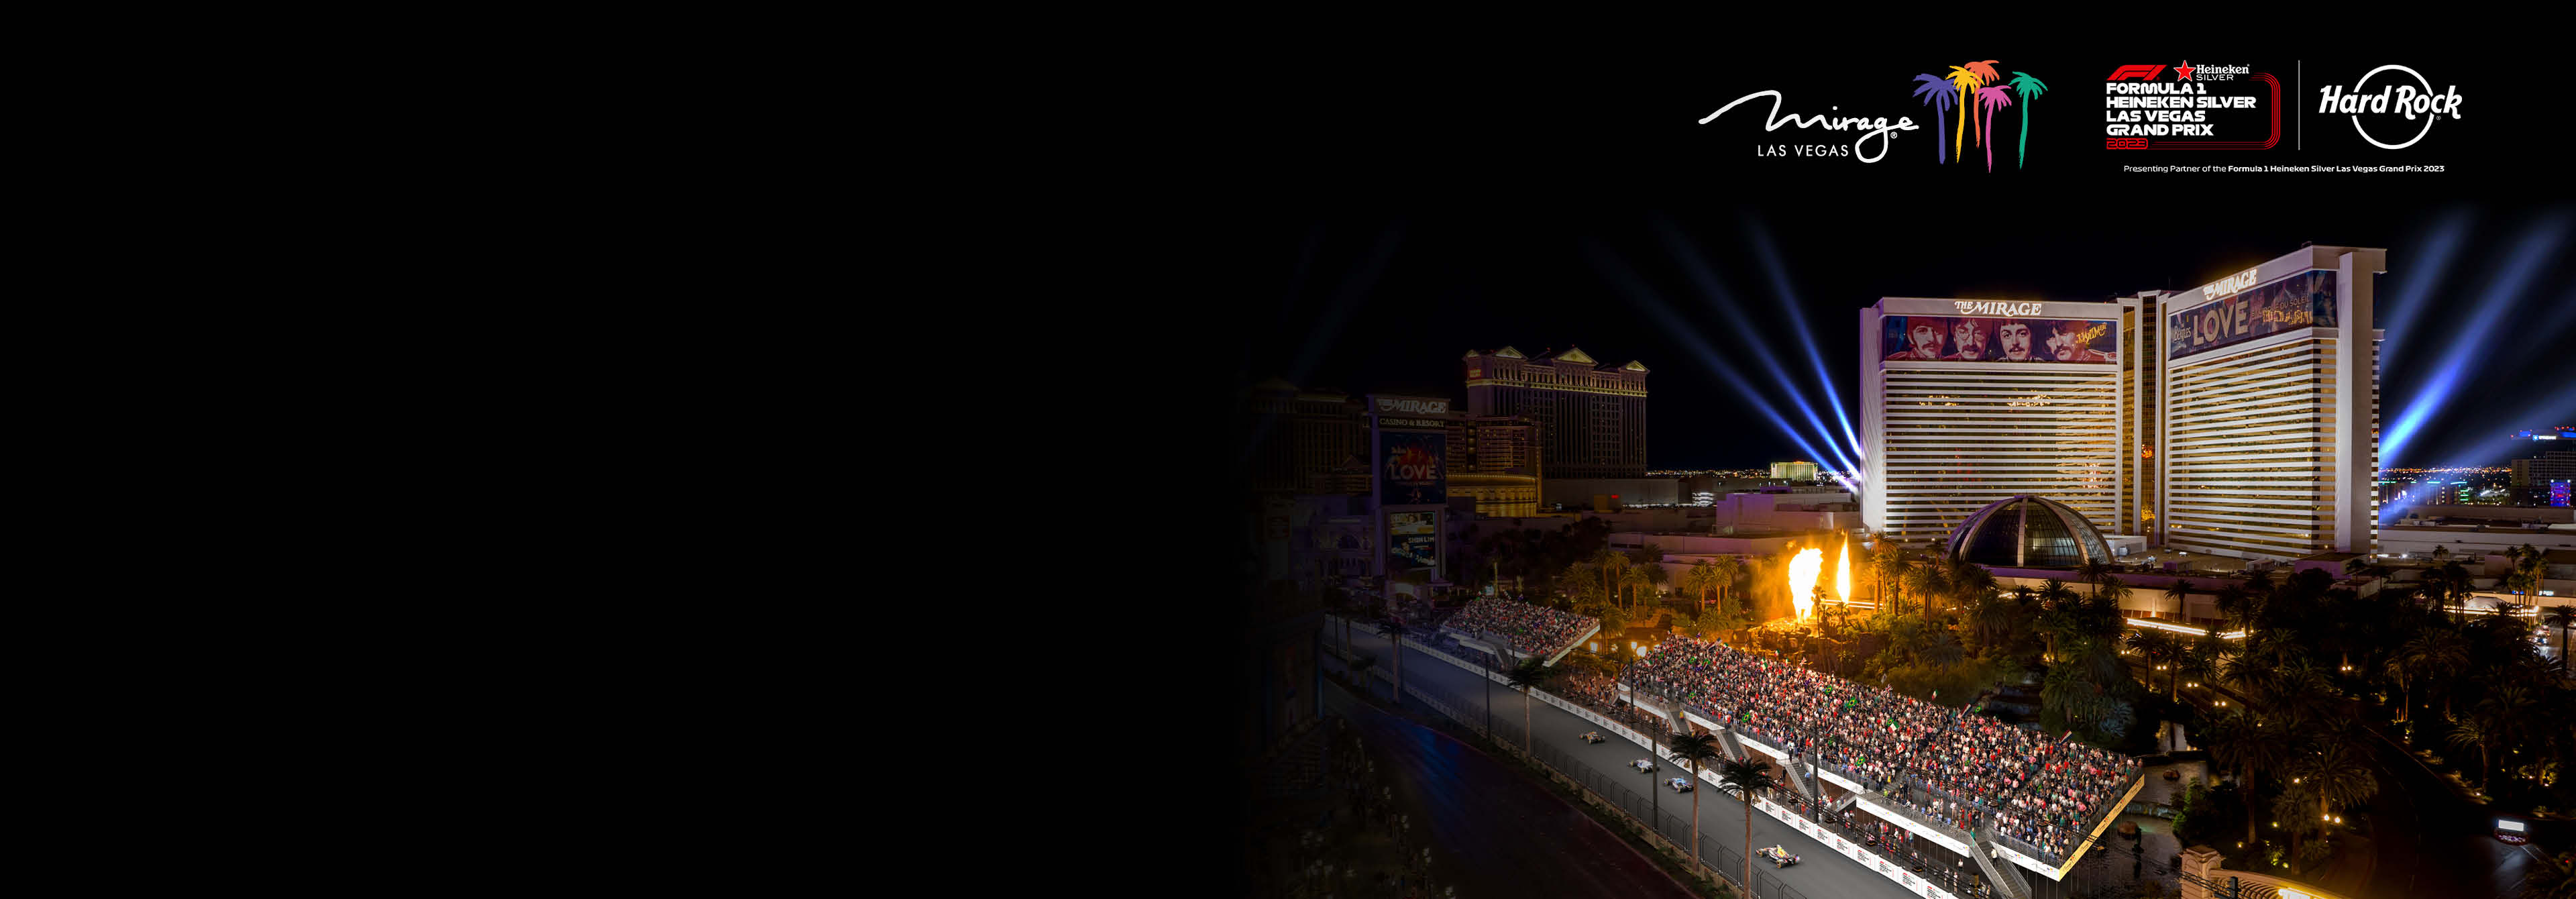 Las Vegas resorts and casinos are now operating 24/7, Las Vegas